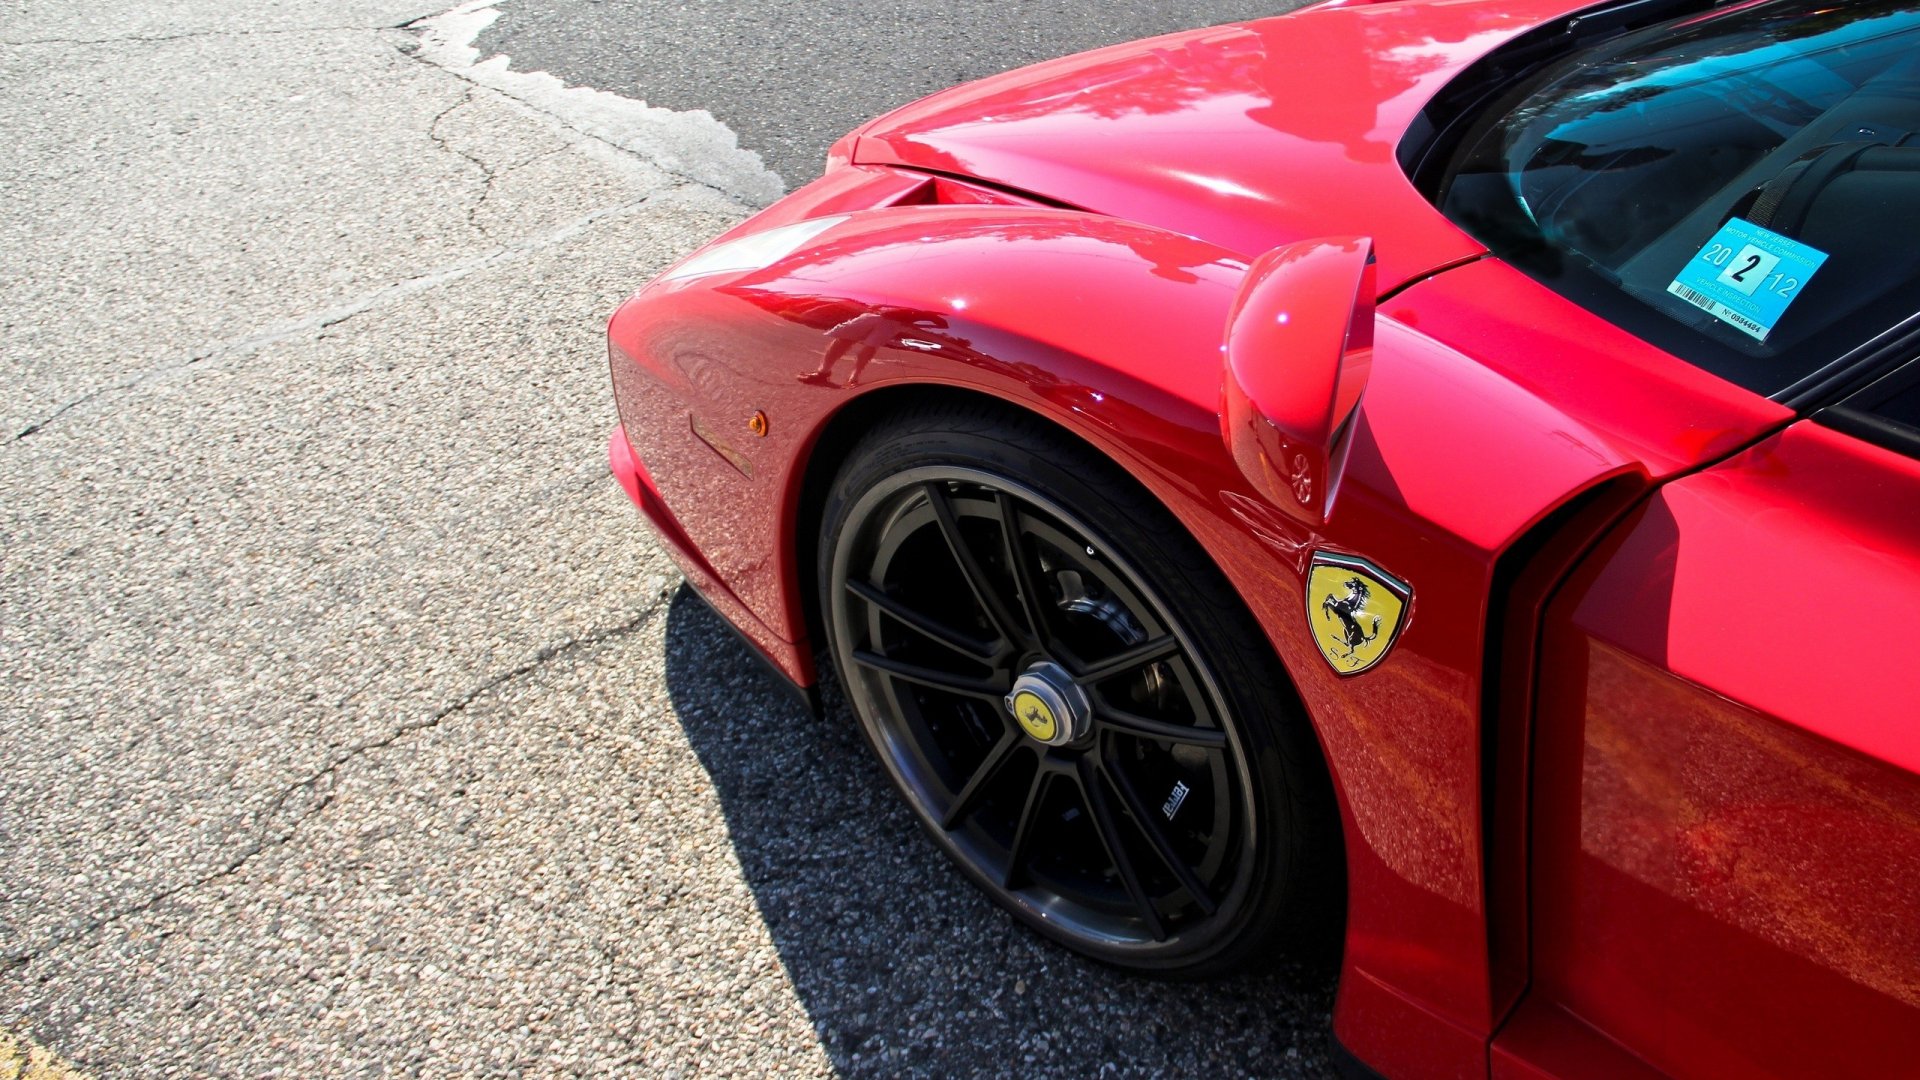 Ferrari, check out the wheels.